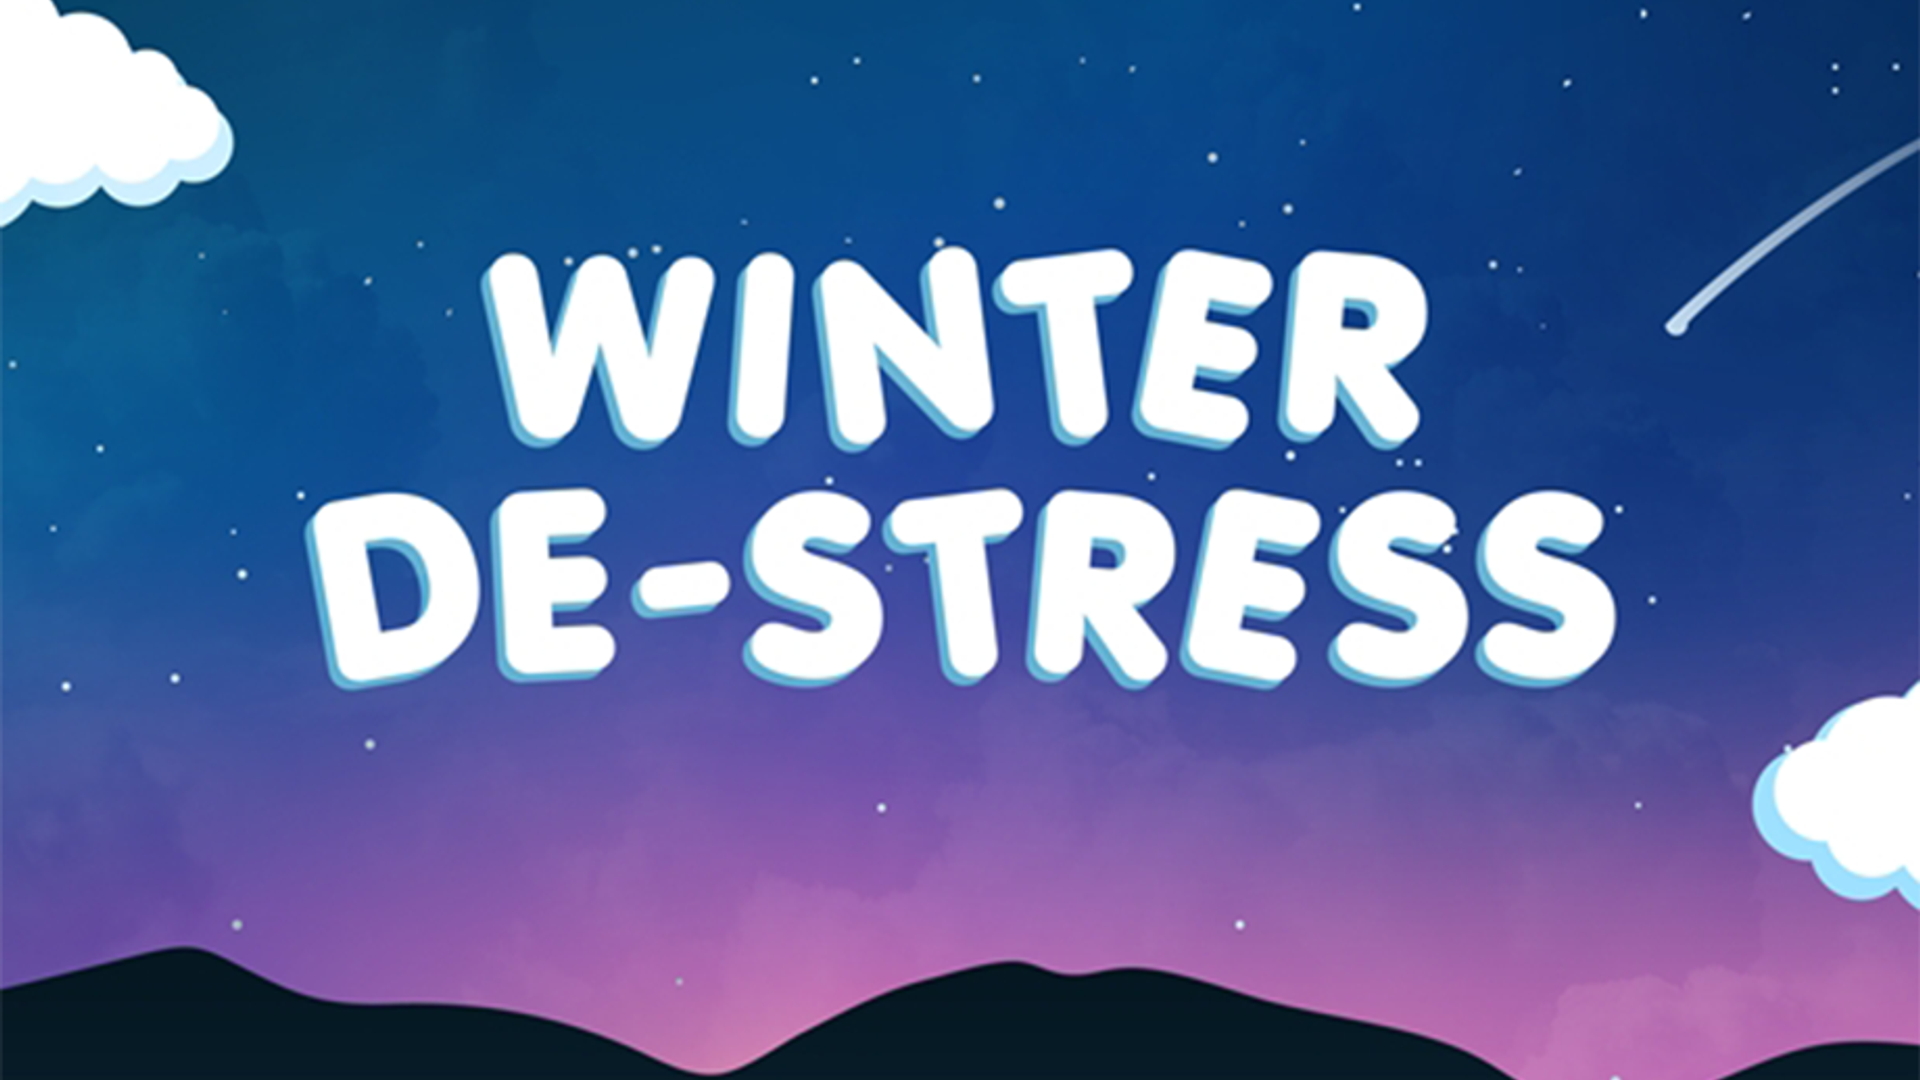 Winter De-Stress